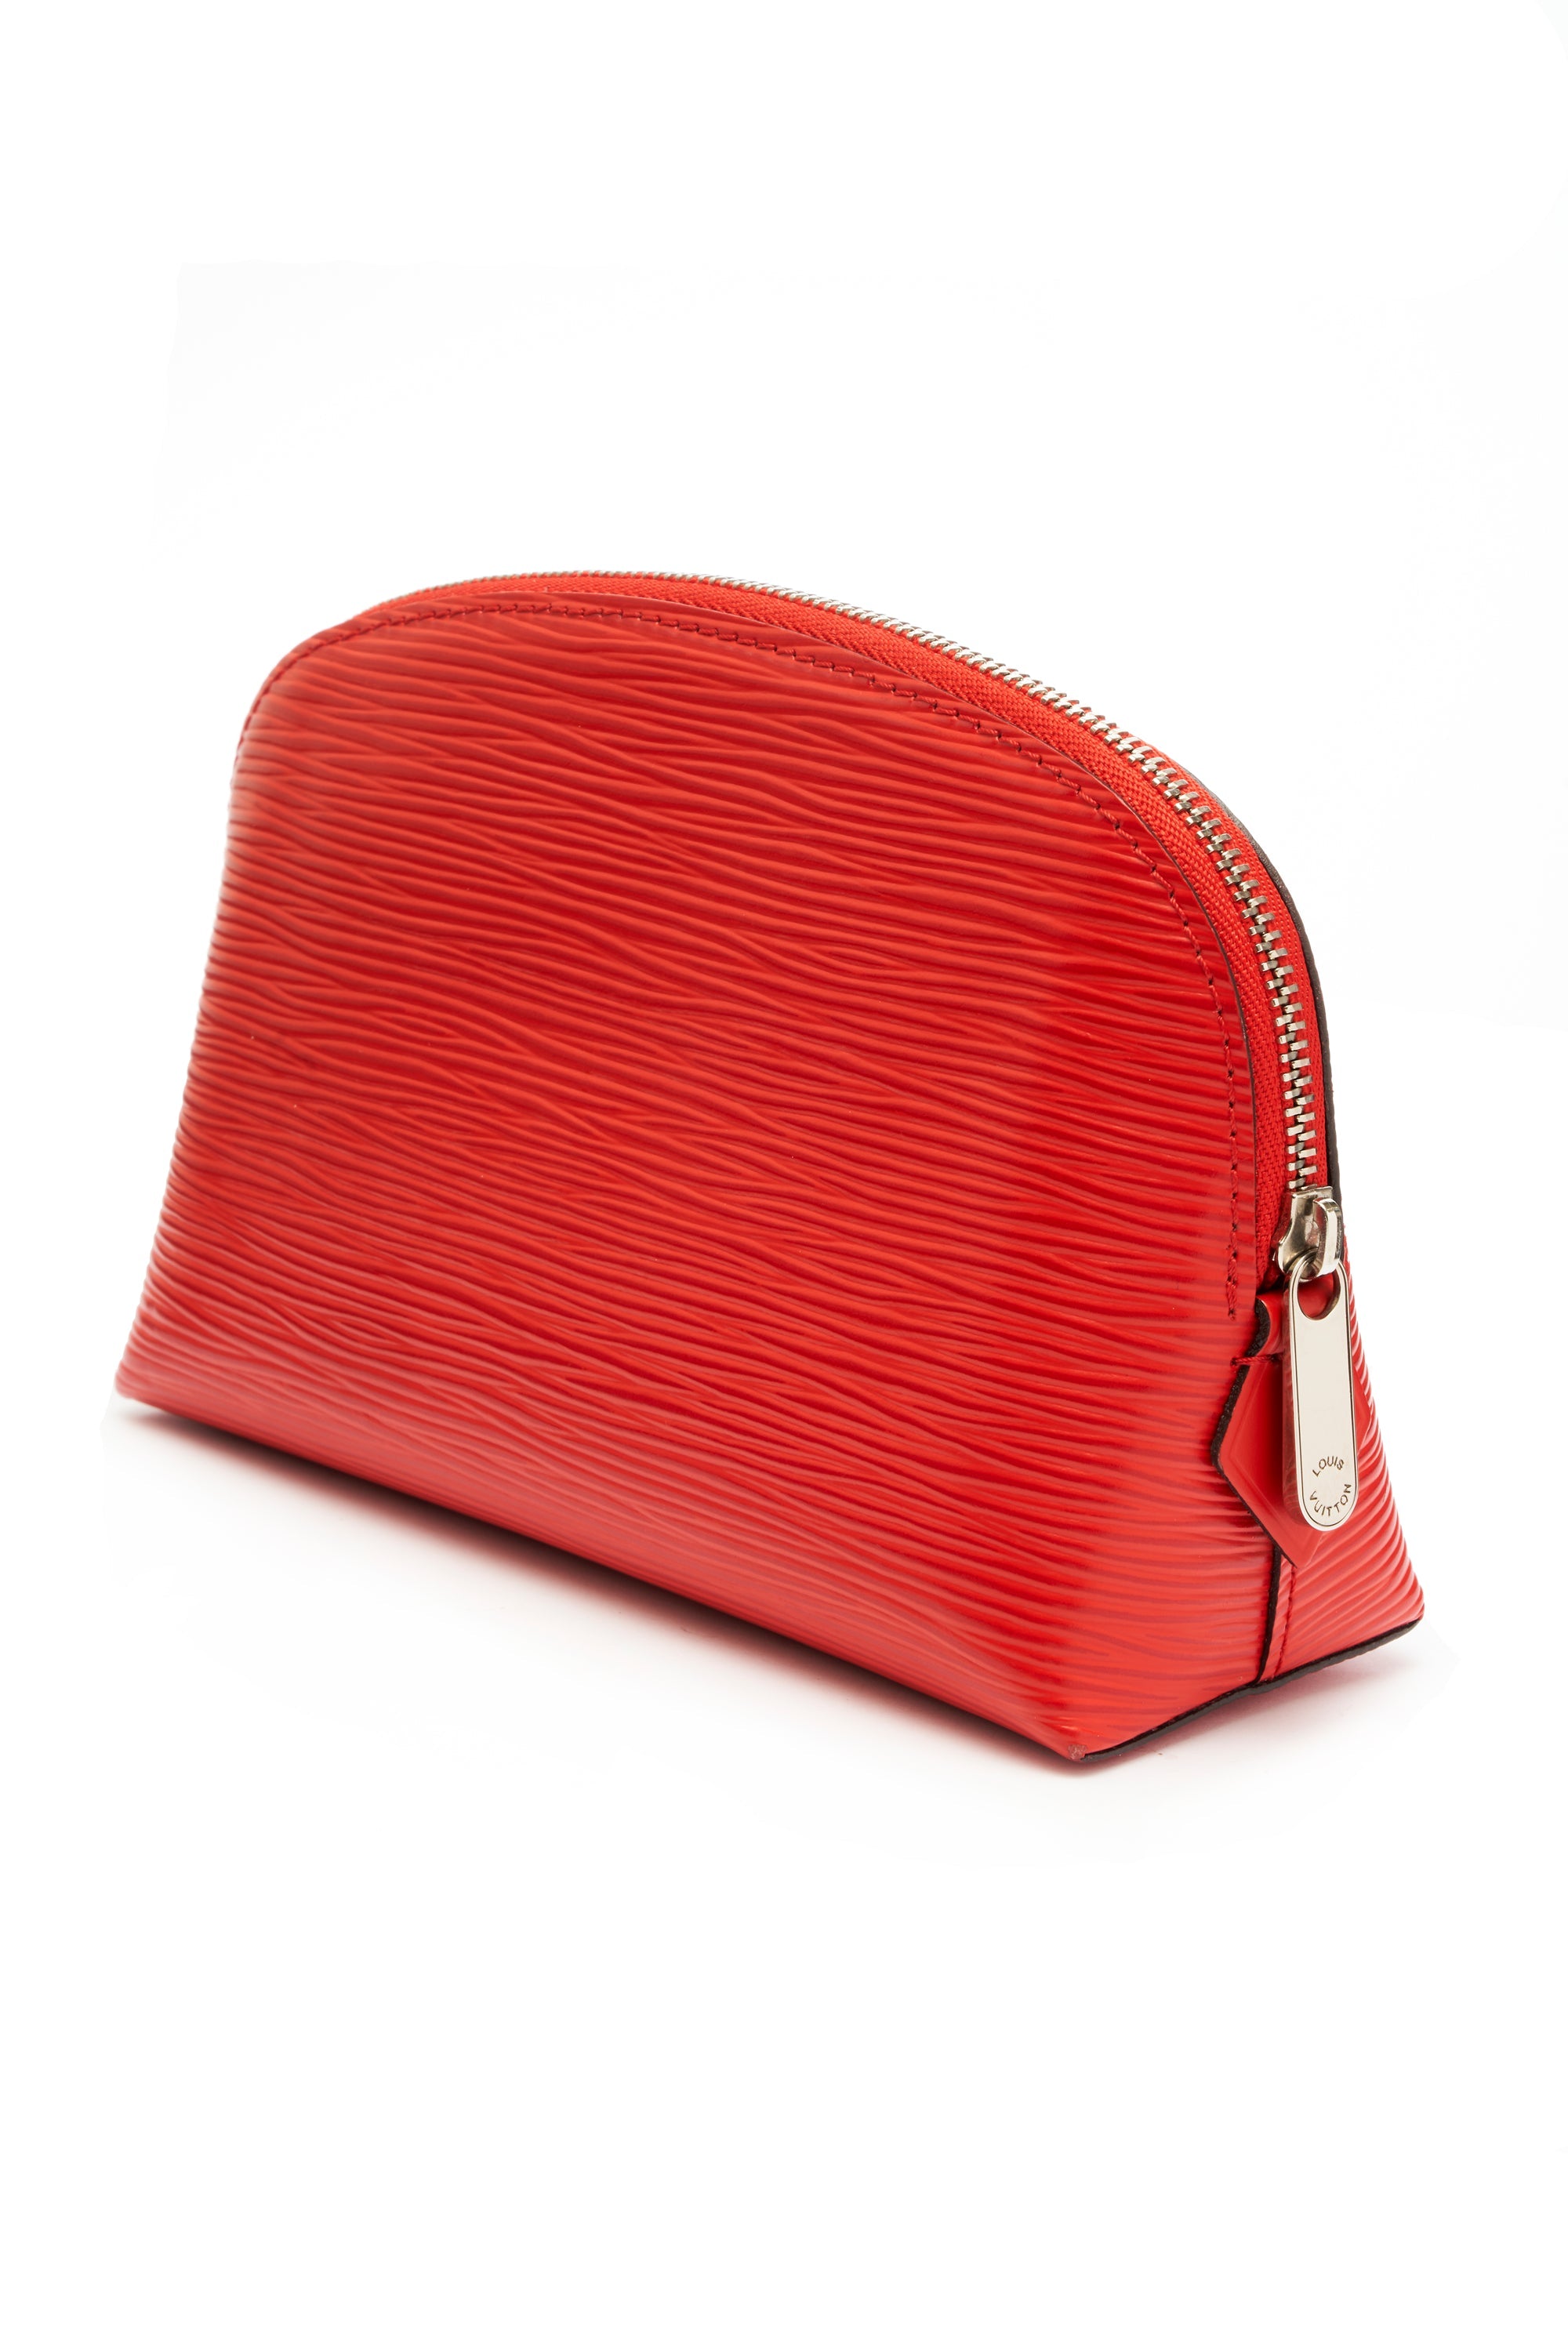 Louis Vuitton Coquelicot Red Epi Leather Cosmetics Pochette - Foxy Couture Carmel